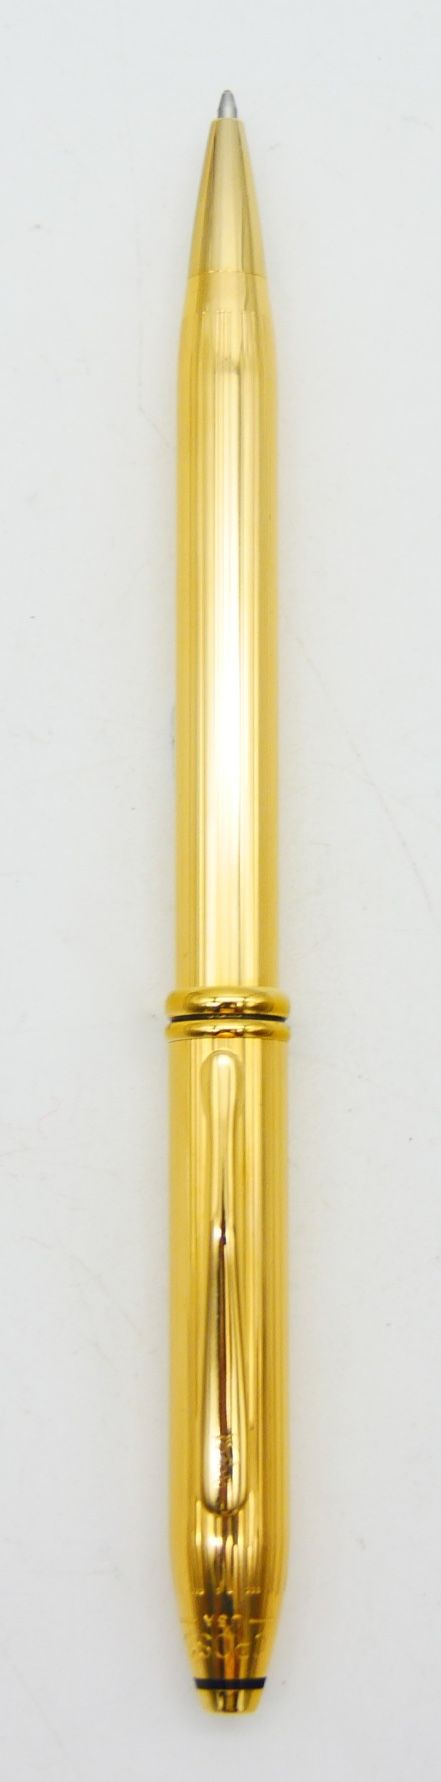 Null 横向

汤森

带凹槽的镀金圆珠笔管

刻有十字架的美国

长：15厘米，6英寸。

文件，箱和过箱



状况良好